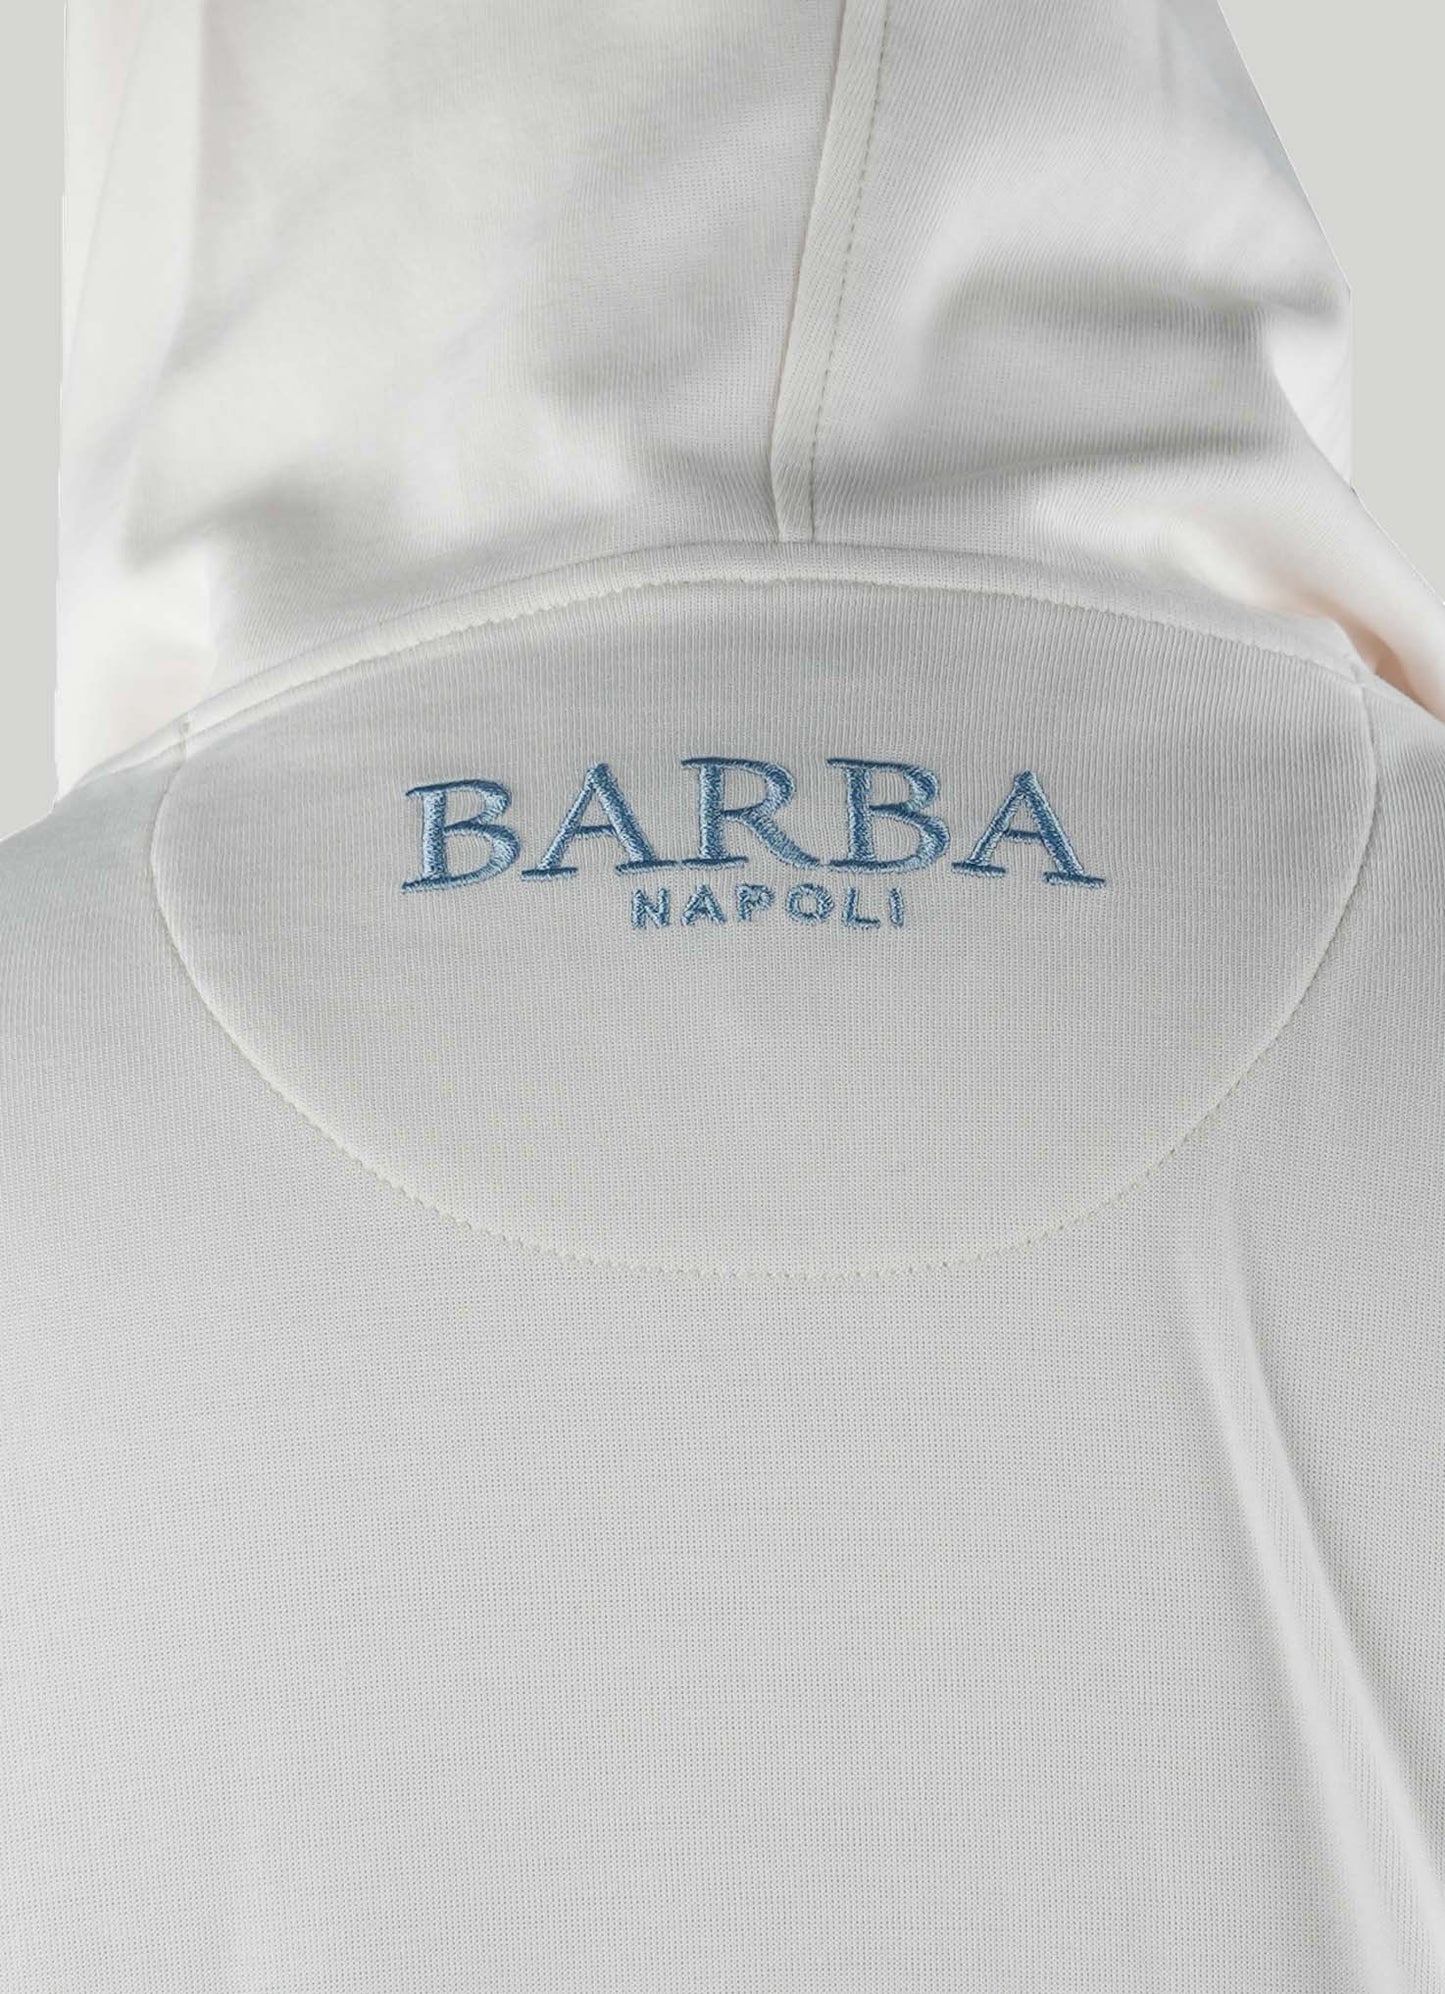 Barba Napoli White Cotton Pa Sweater Full Zip